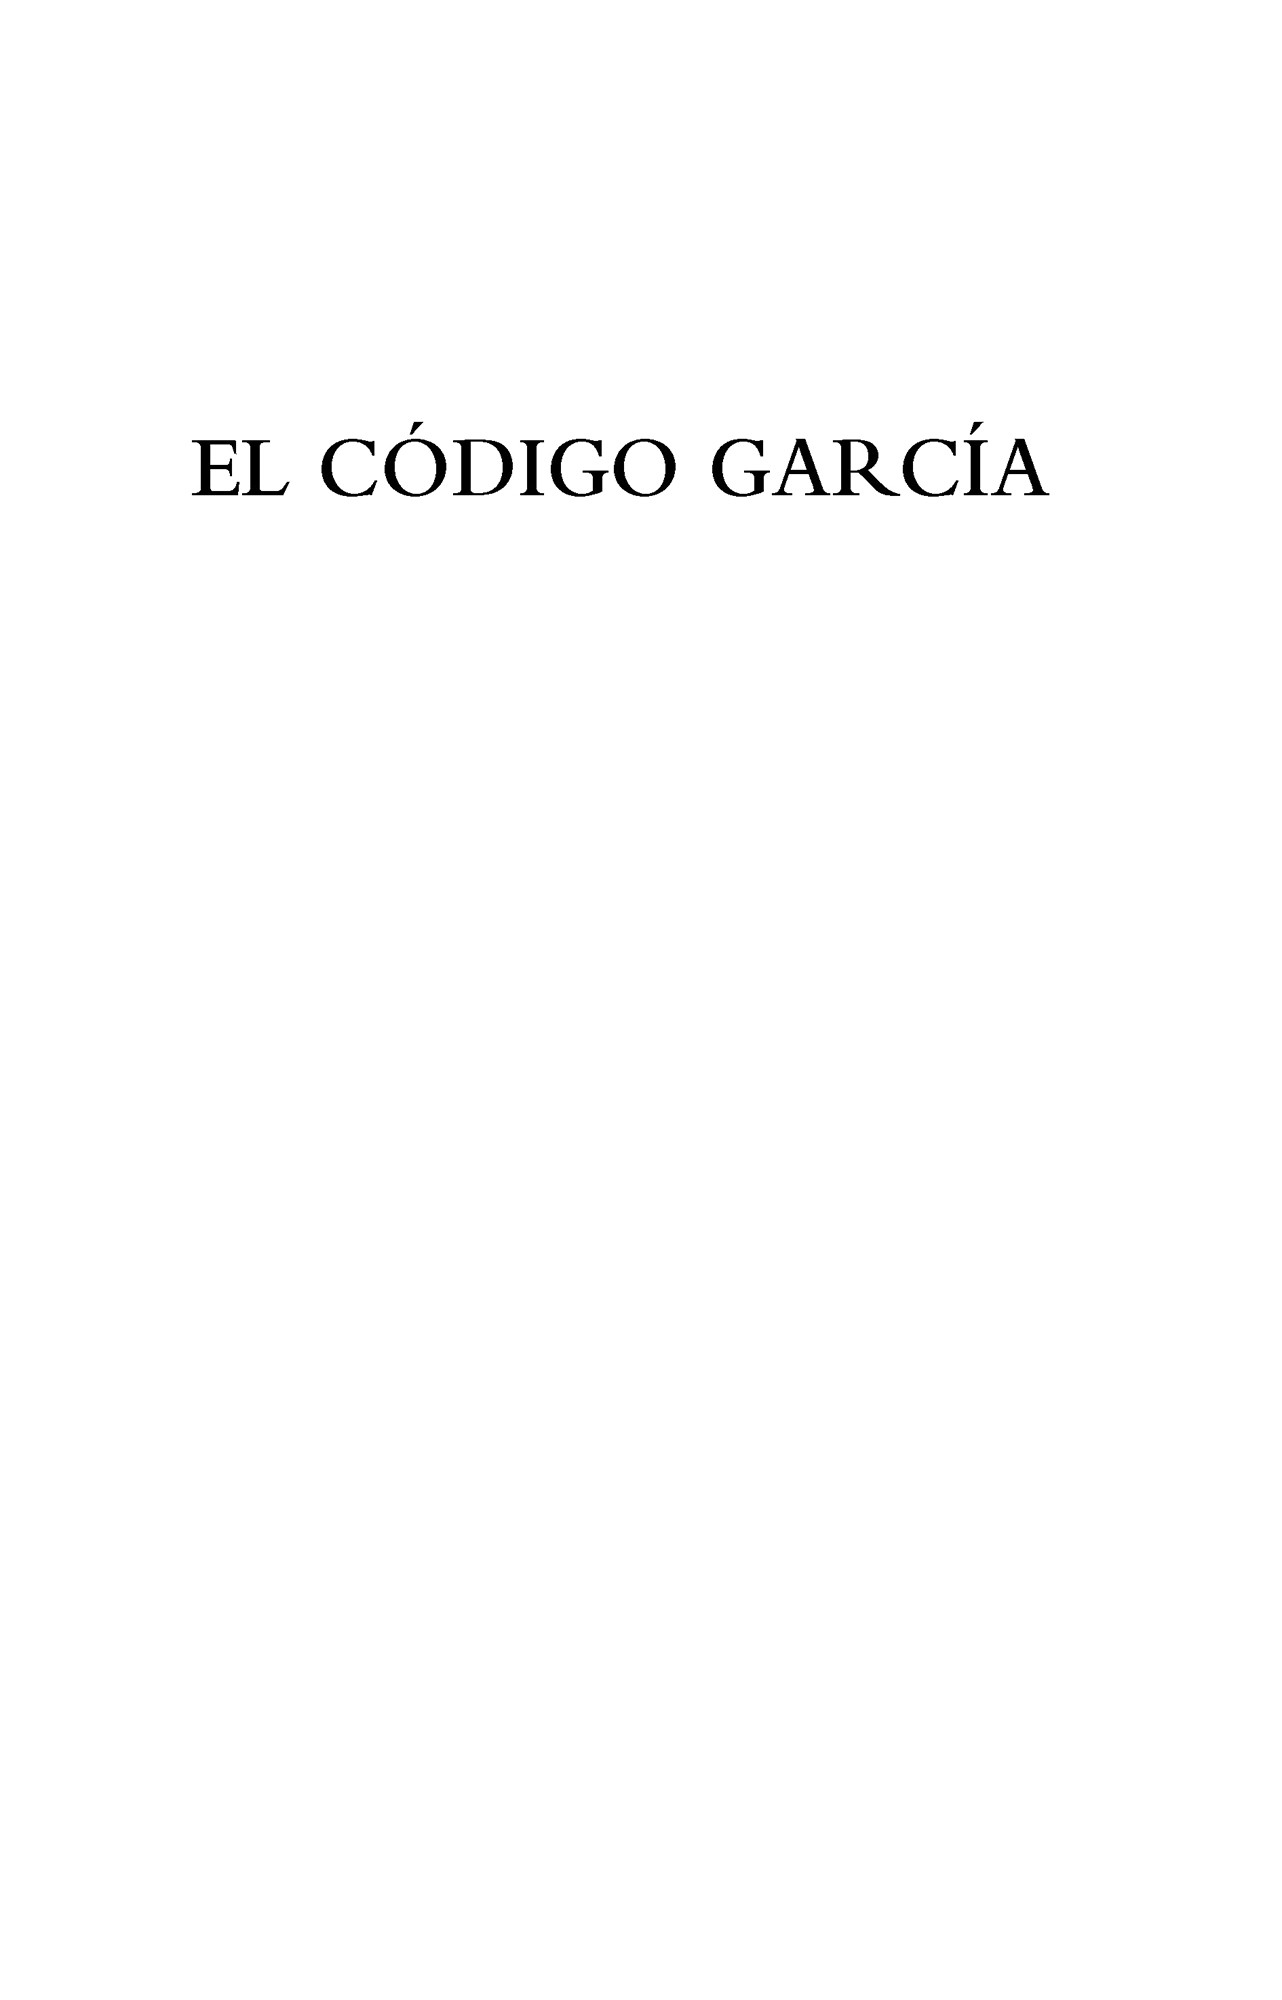 El Código García - image 2